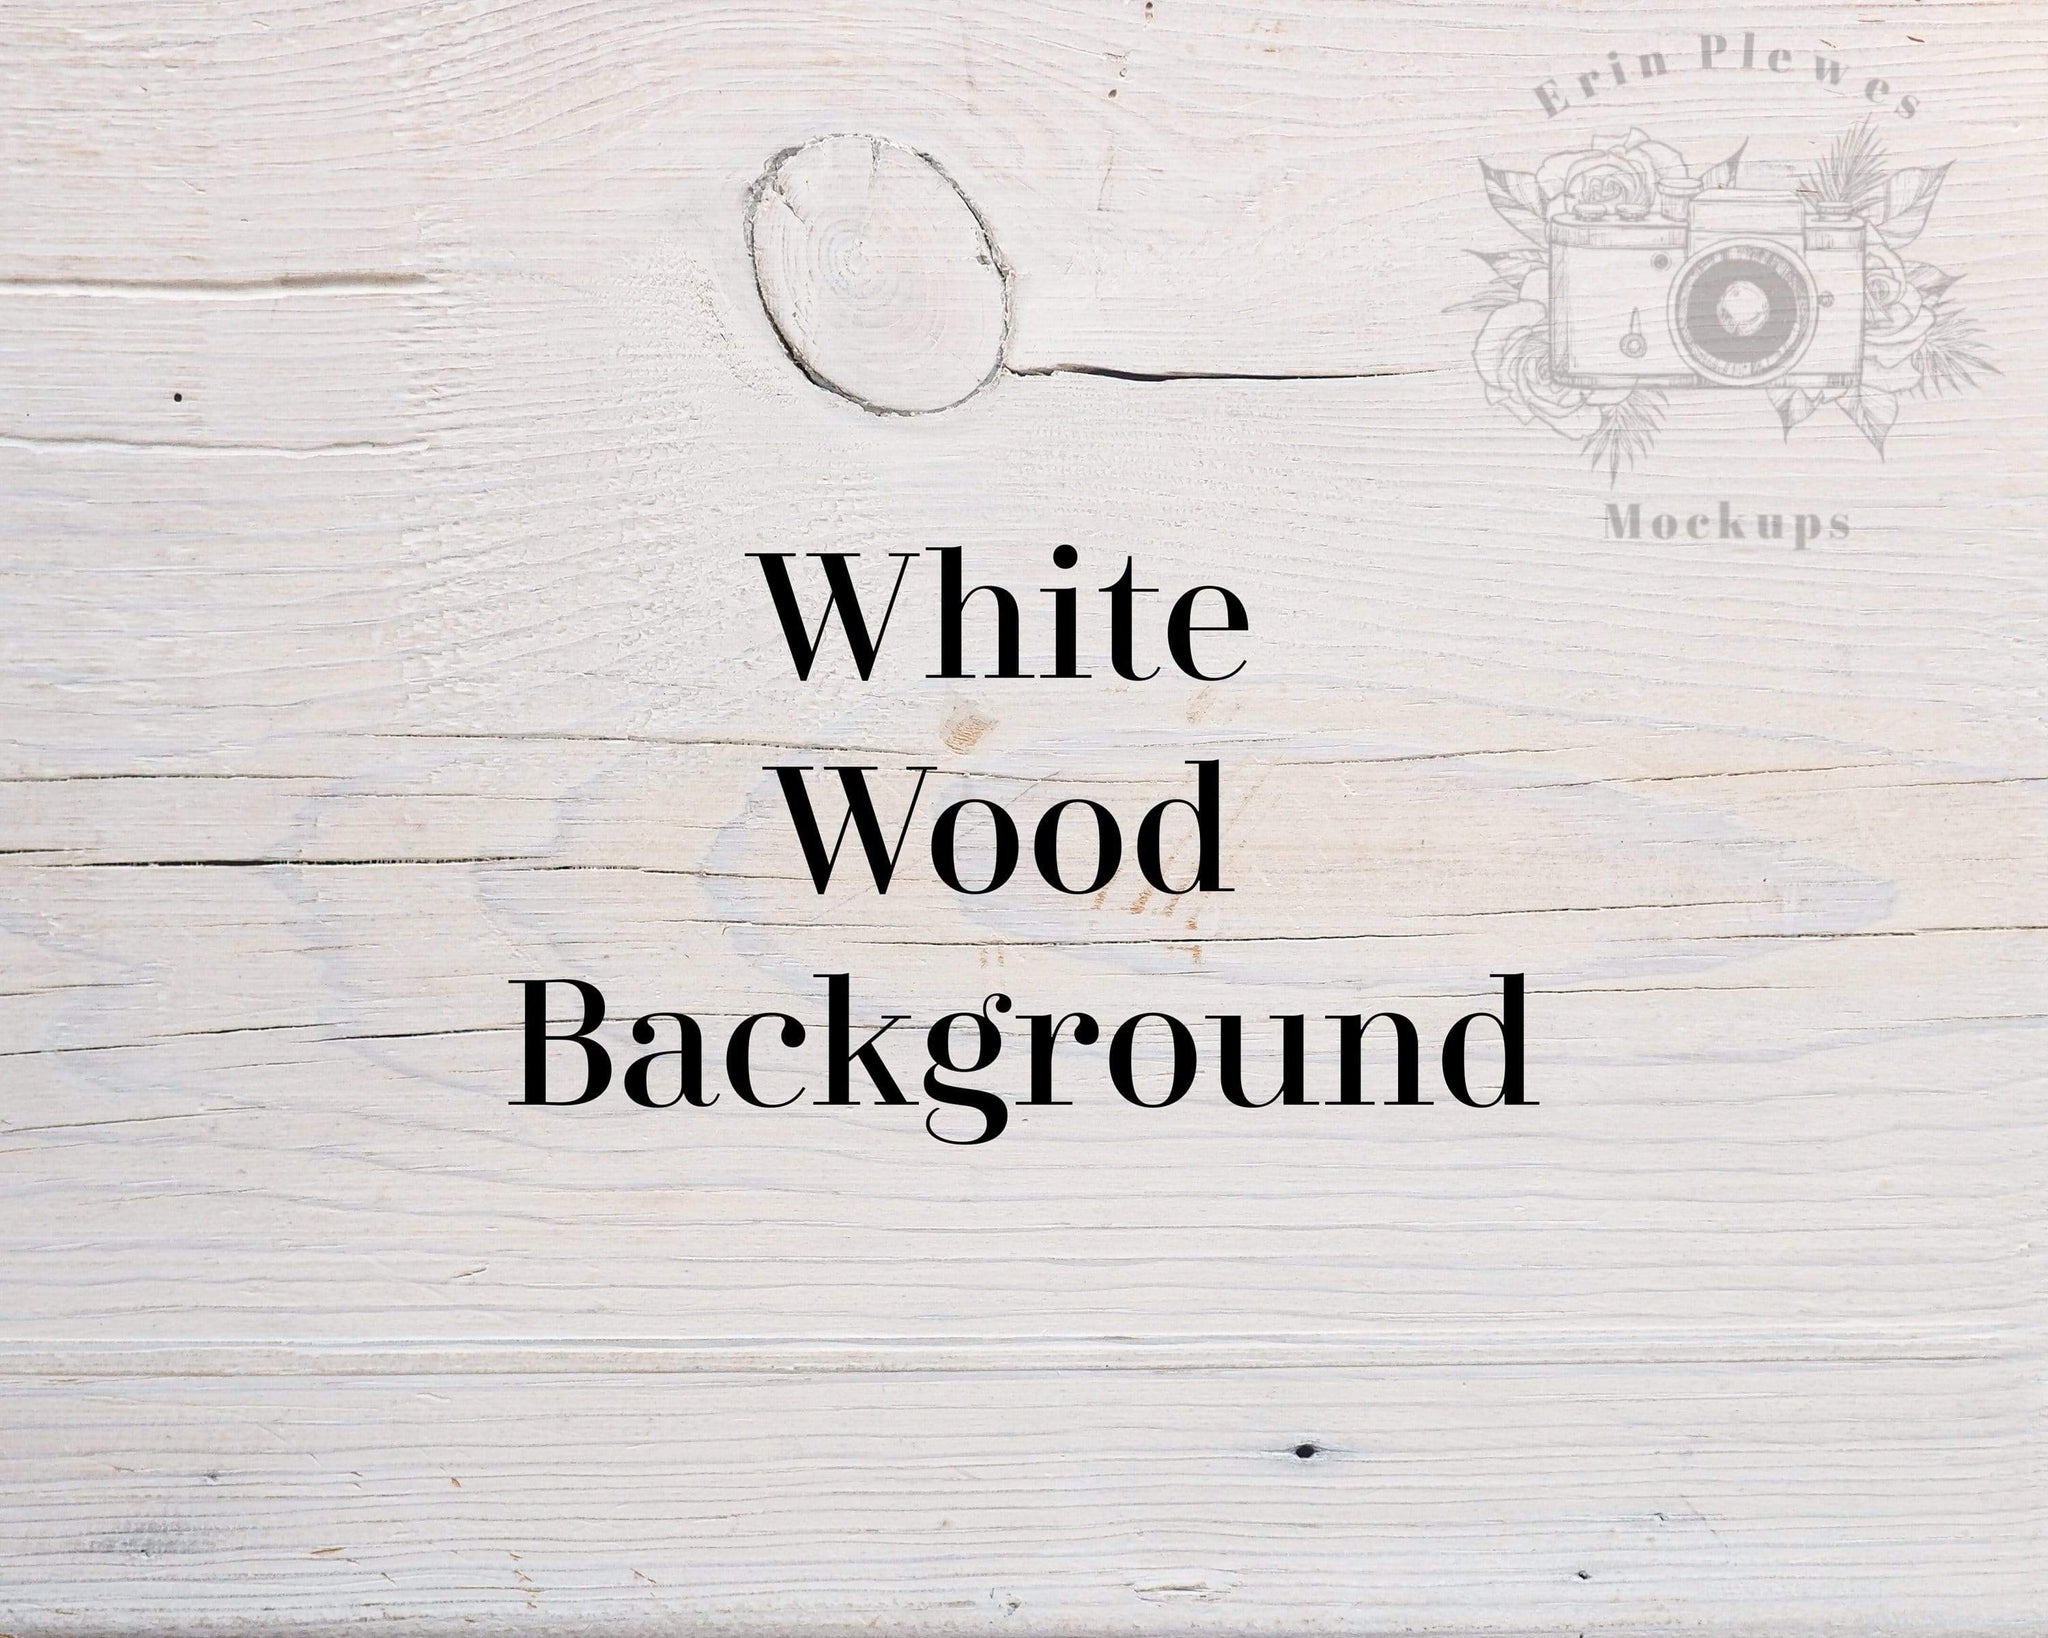 Mẫu nền gỗ trắng: Không gian sống của bạn sẽ trở nên sang trọng và hiện đại hơn với mẫu nền gỗ trắng. Hình ảnh này sẽ giúp bạn visualized được không gian của mình trong sự trang trọng và đẳng cấp. Hãy cùng khám phá hình ảnh này để tìm kiếm sự lựa chọn hoàn hảo cho không gian của bạn.